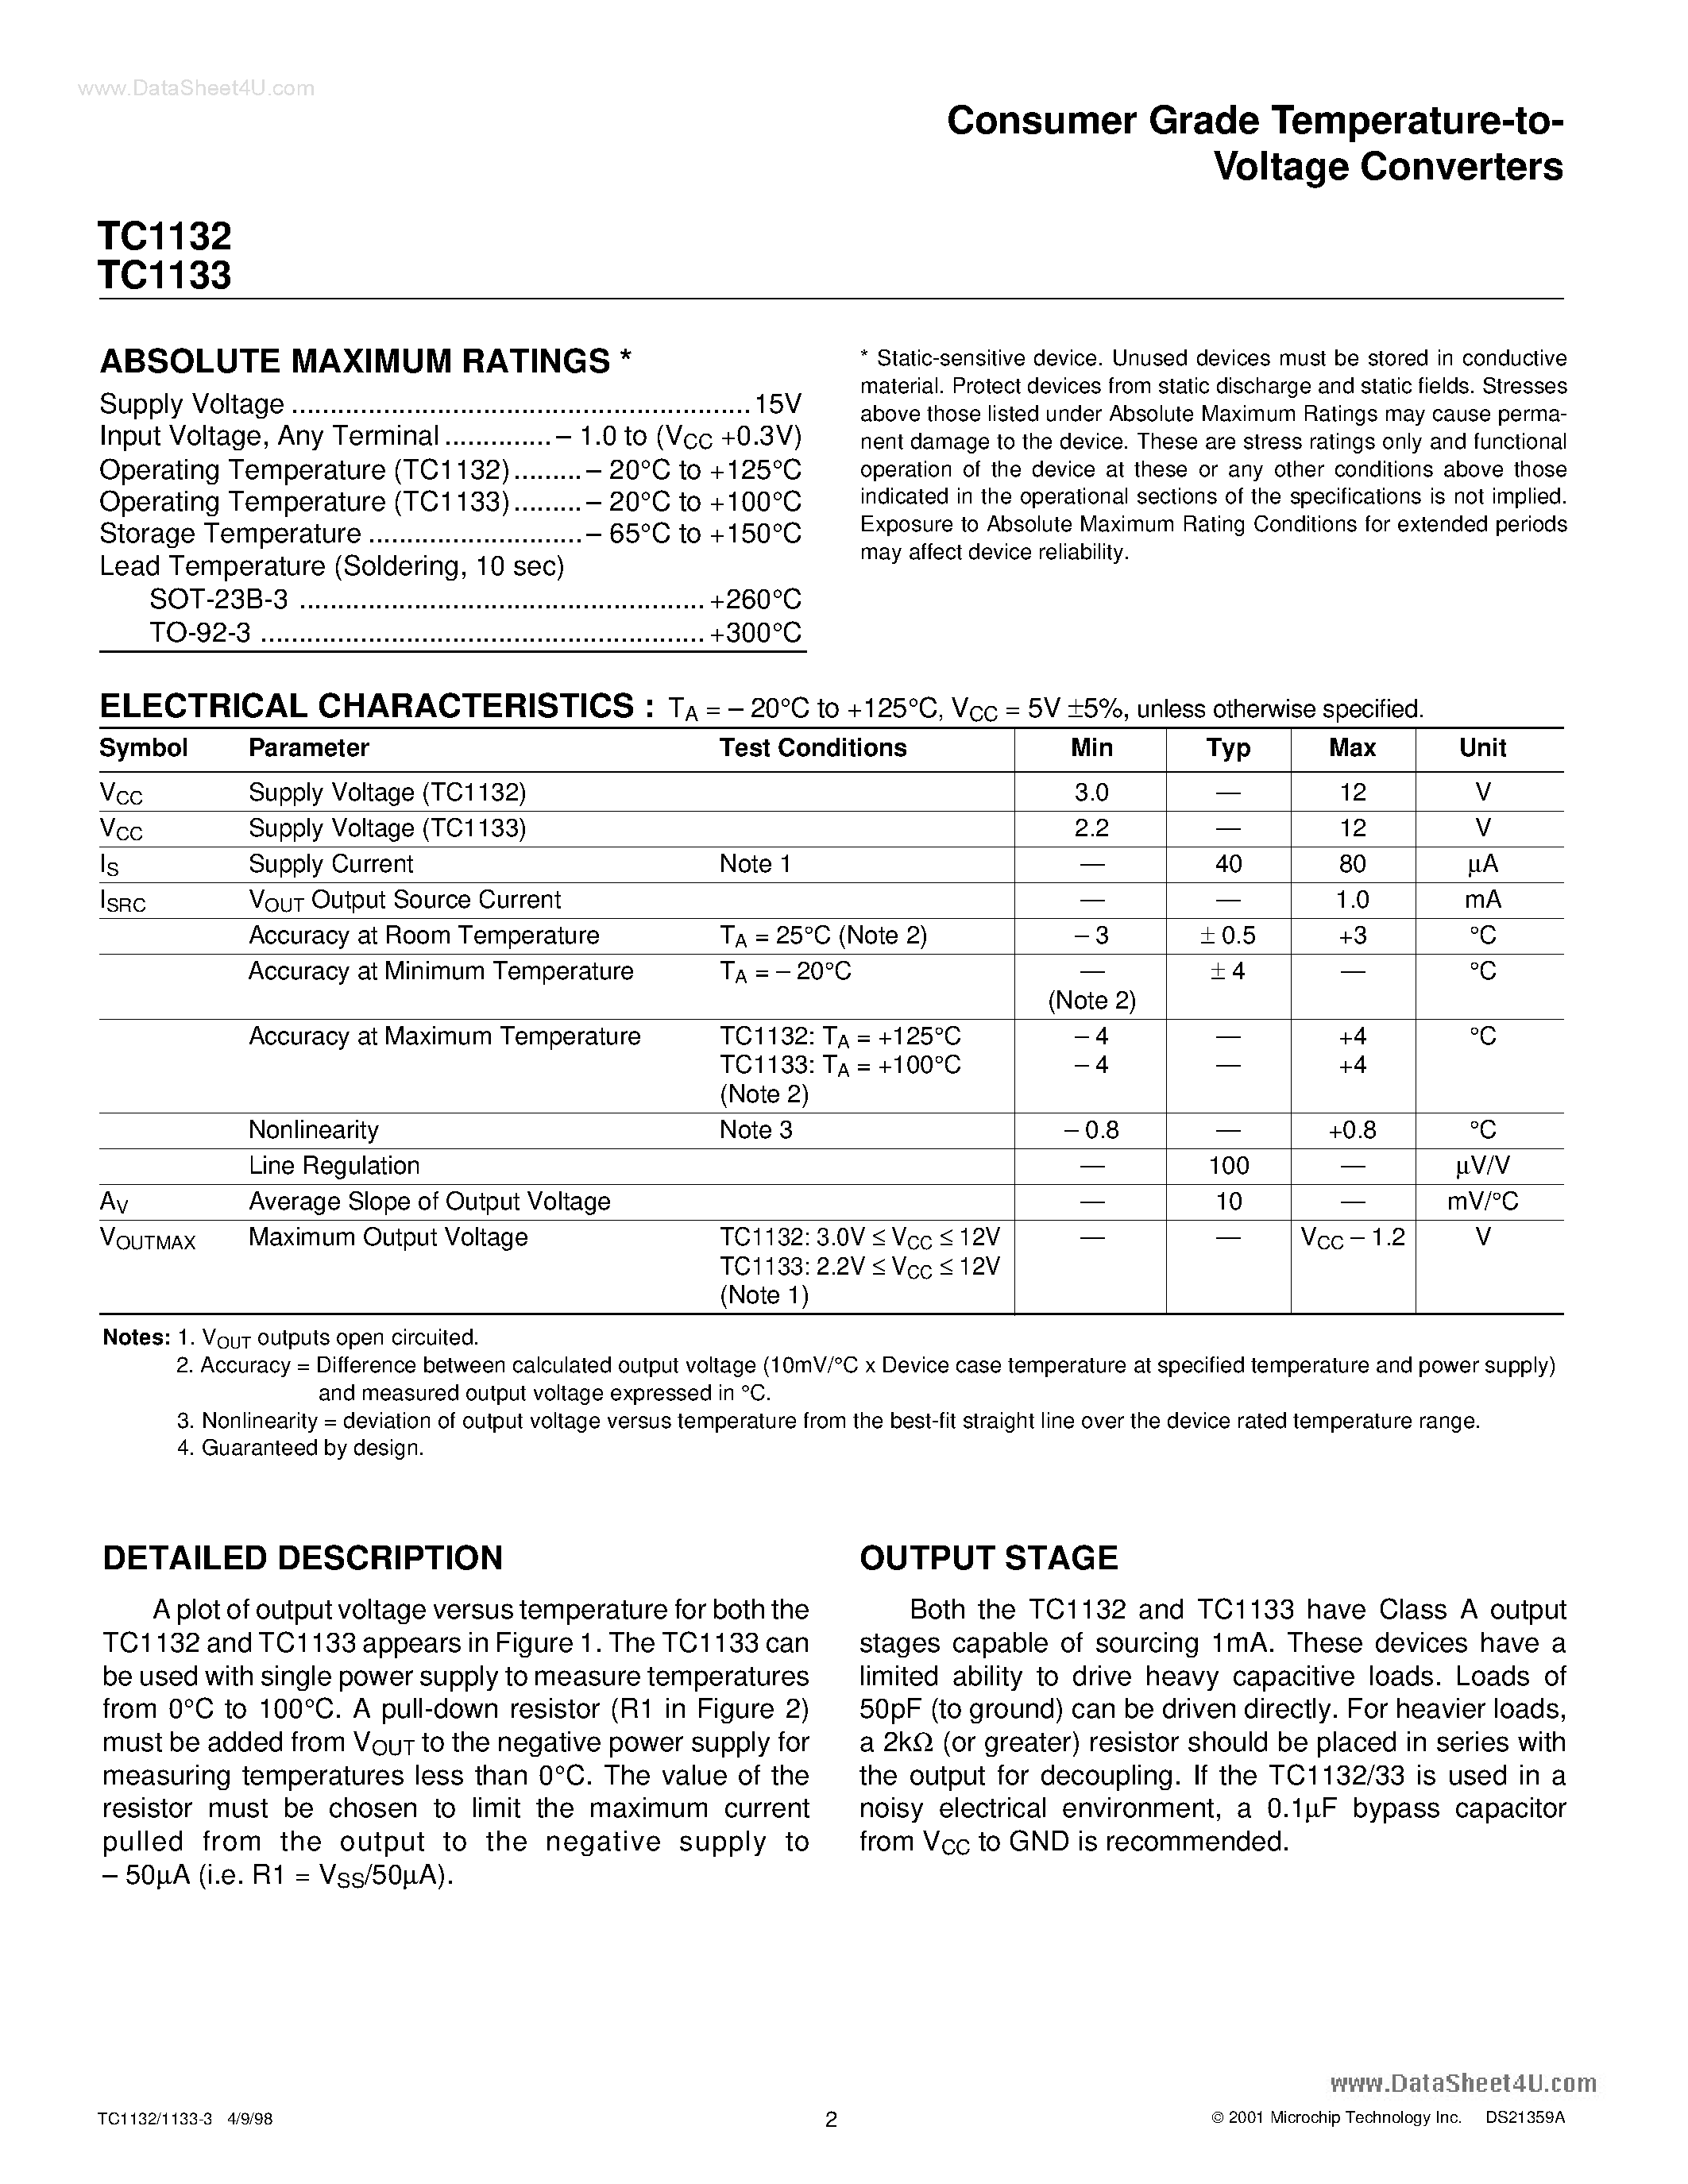 Datasheet TC1132 - (TC1132 / TC1133) Consumer Grade Temperature to Voltage Converters page 2